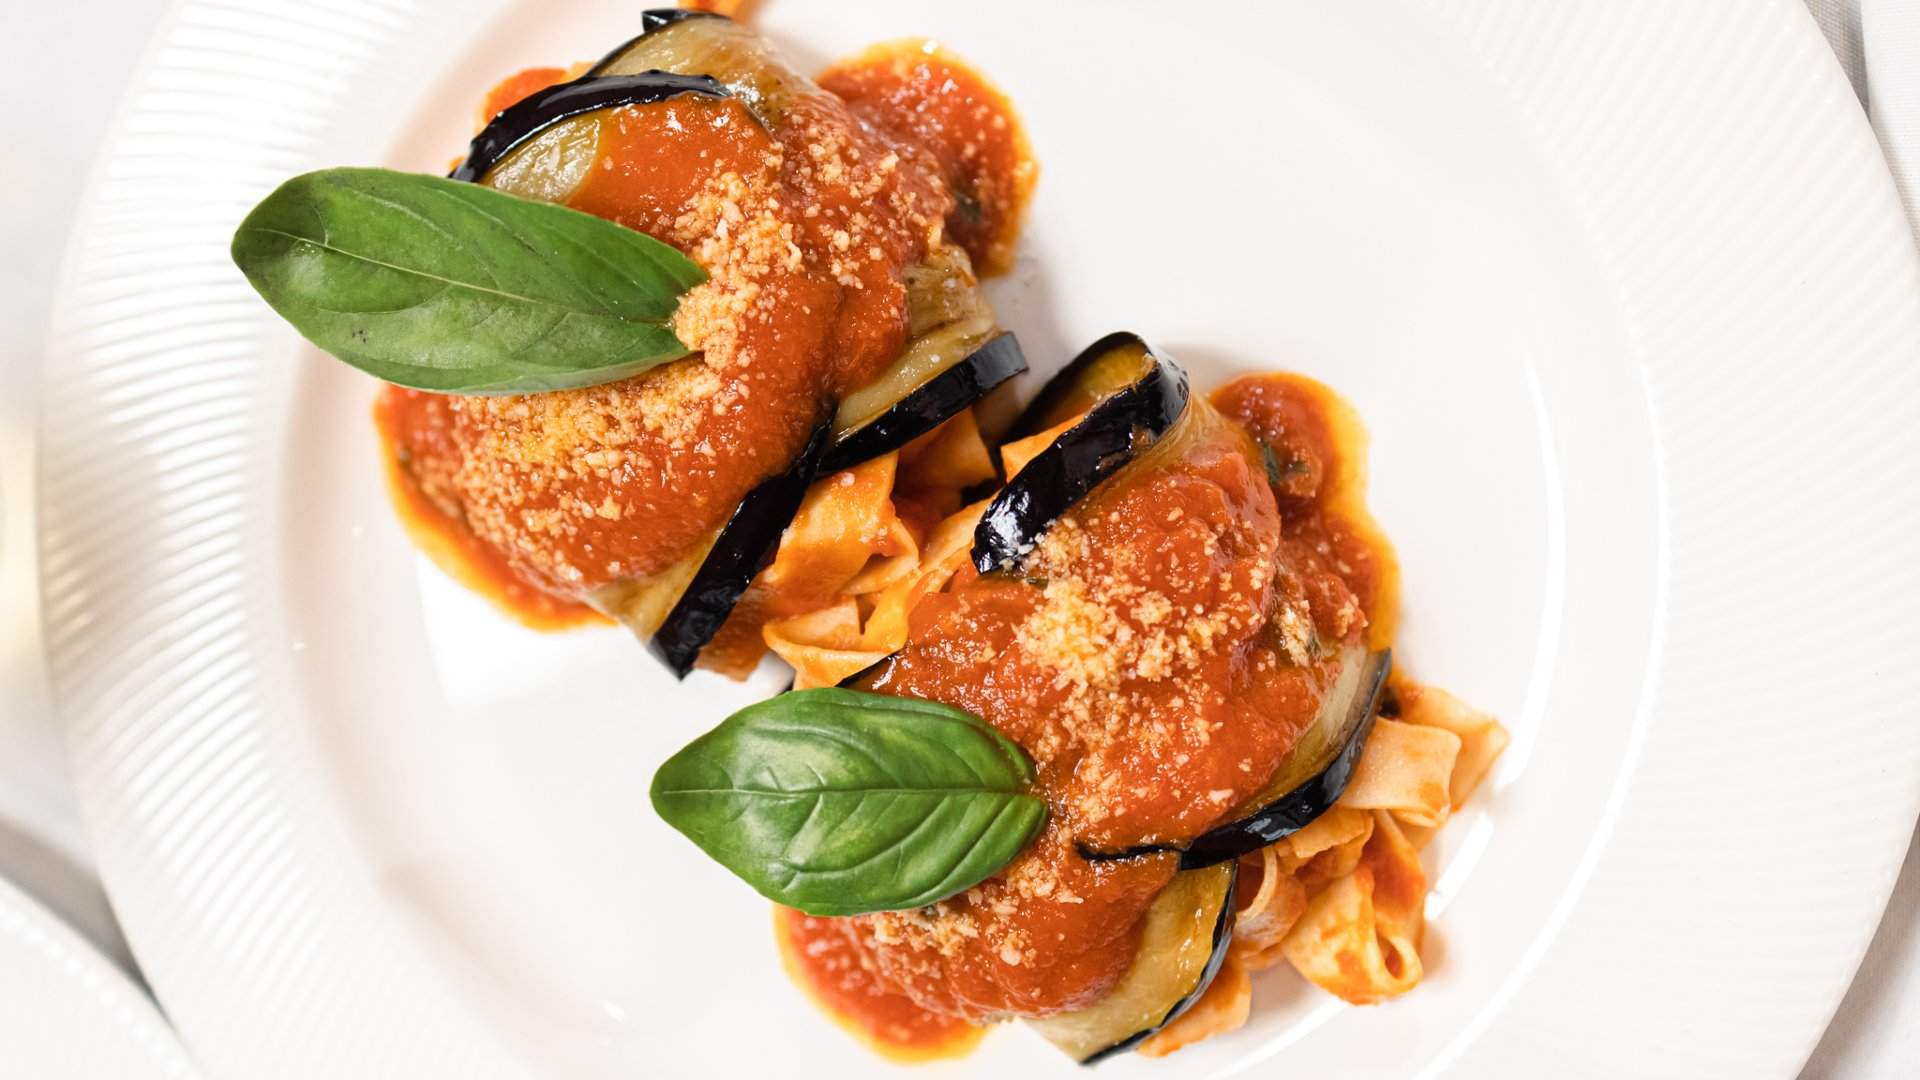 Funghi e Tartufo Is Melbourne's New All-Vegan Italian Restaurant in Hardware Lane